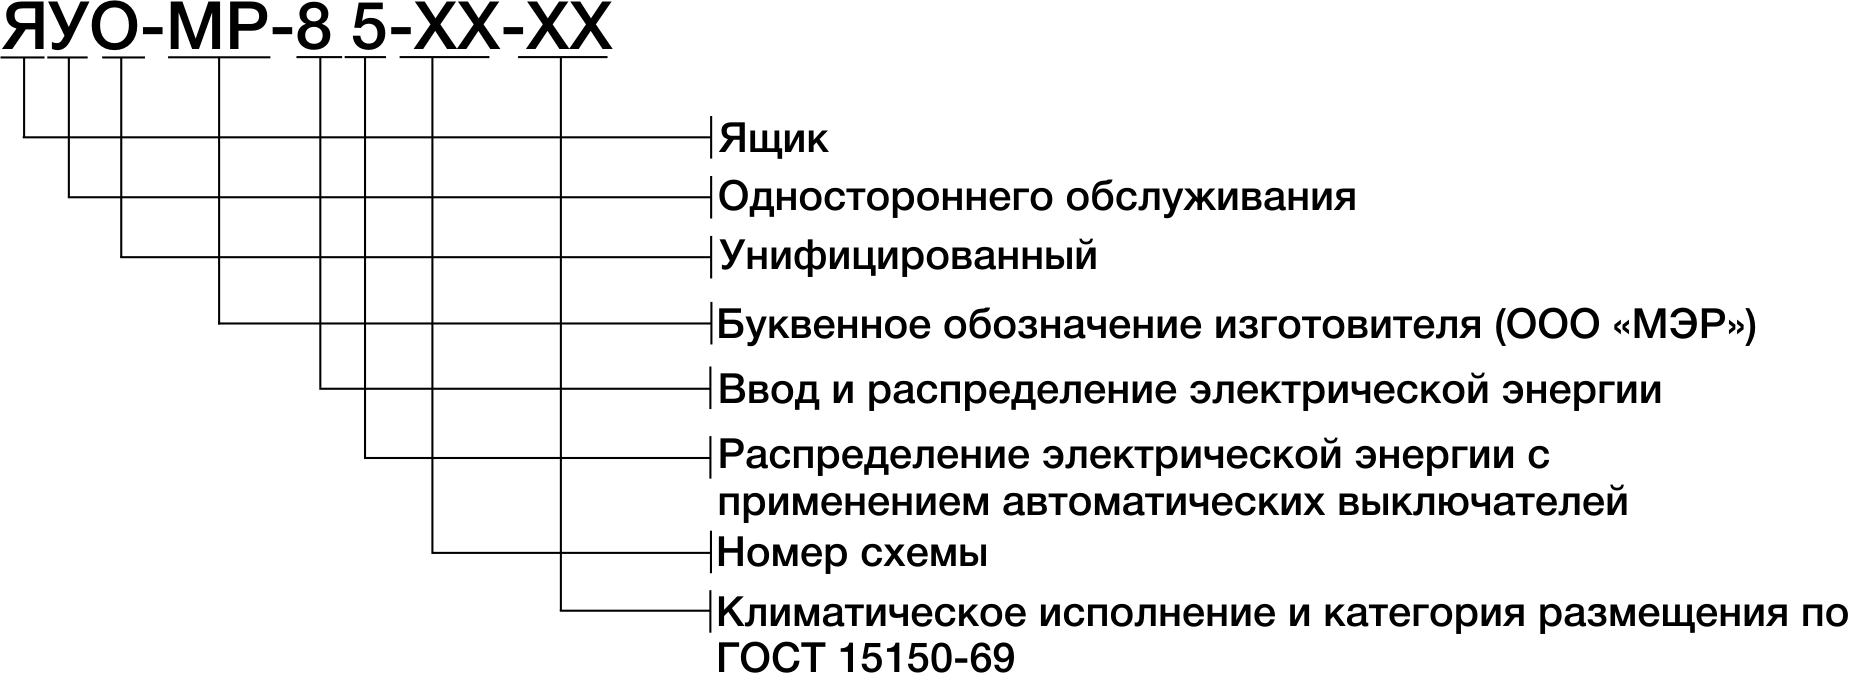 Структура условного обозначения щитка осветительного серии УОЩВ-МР